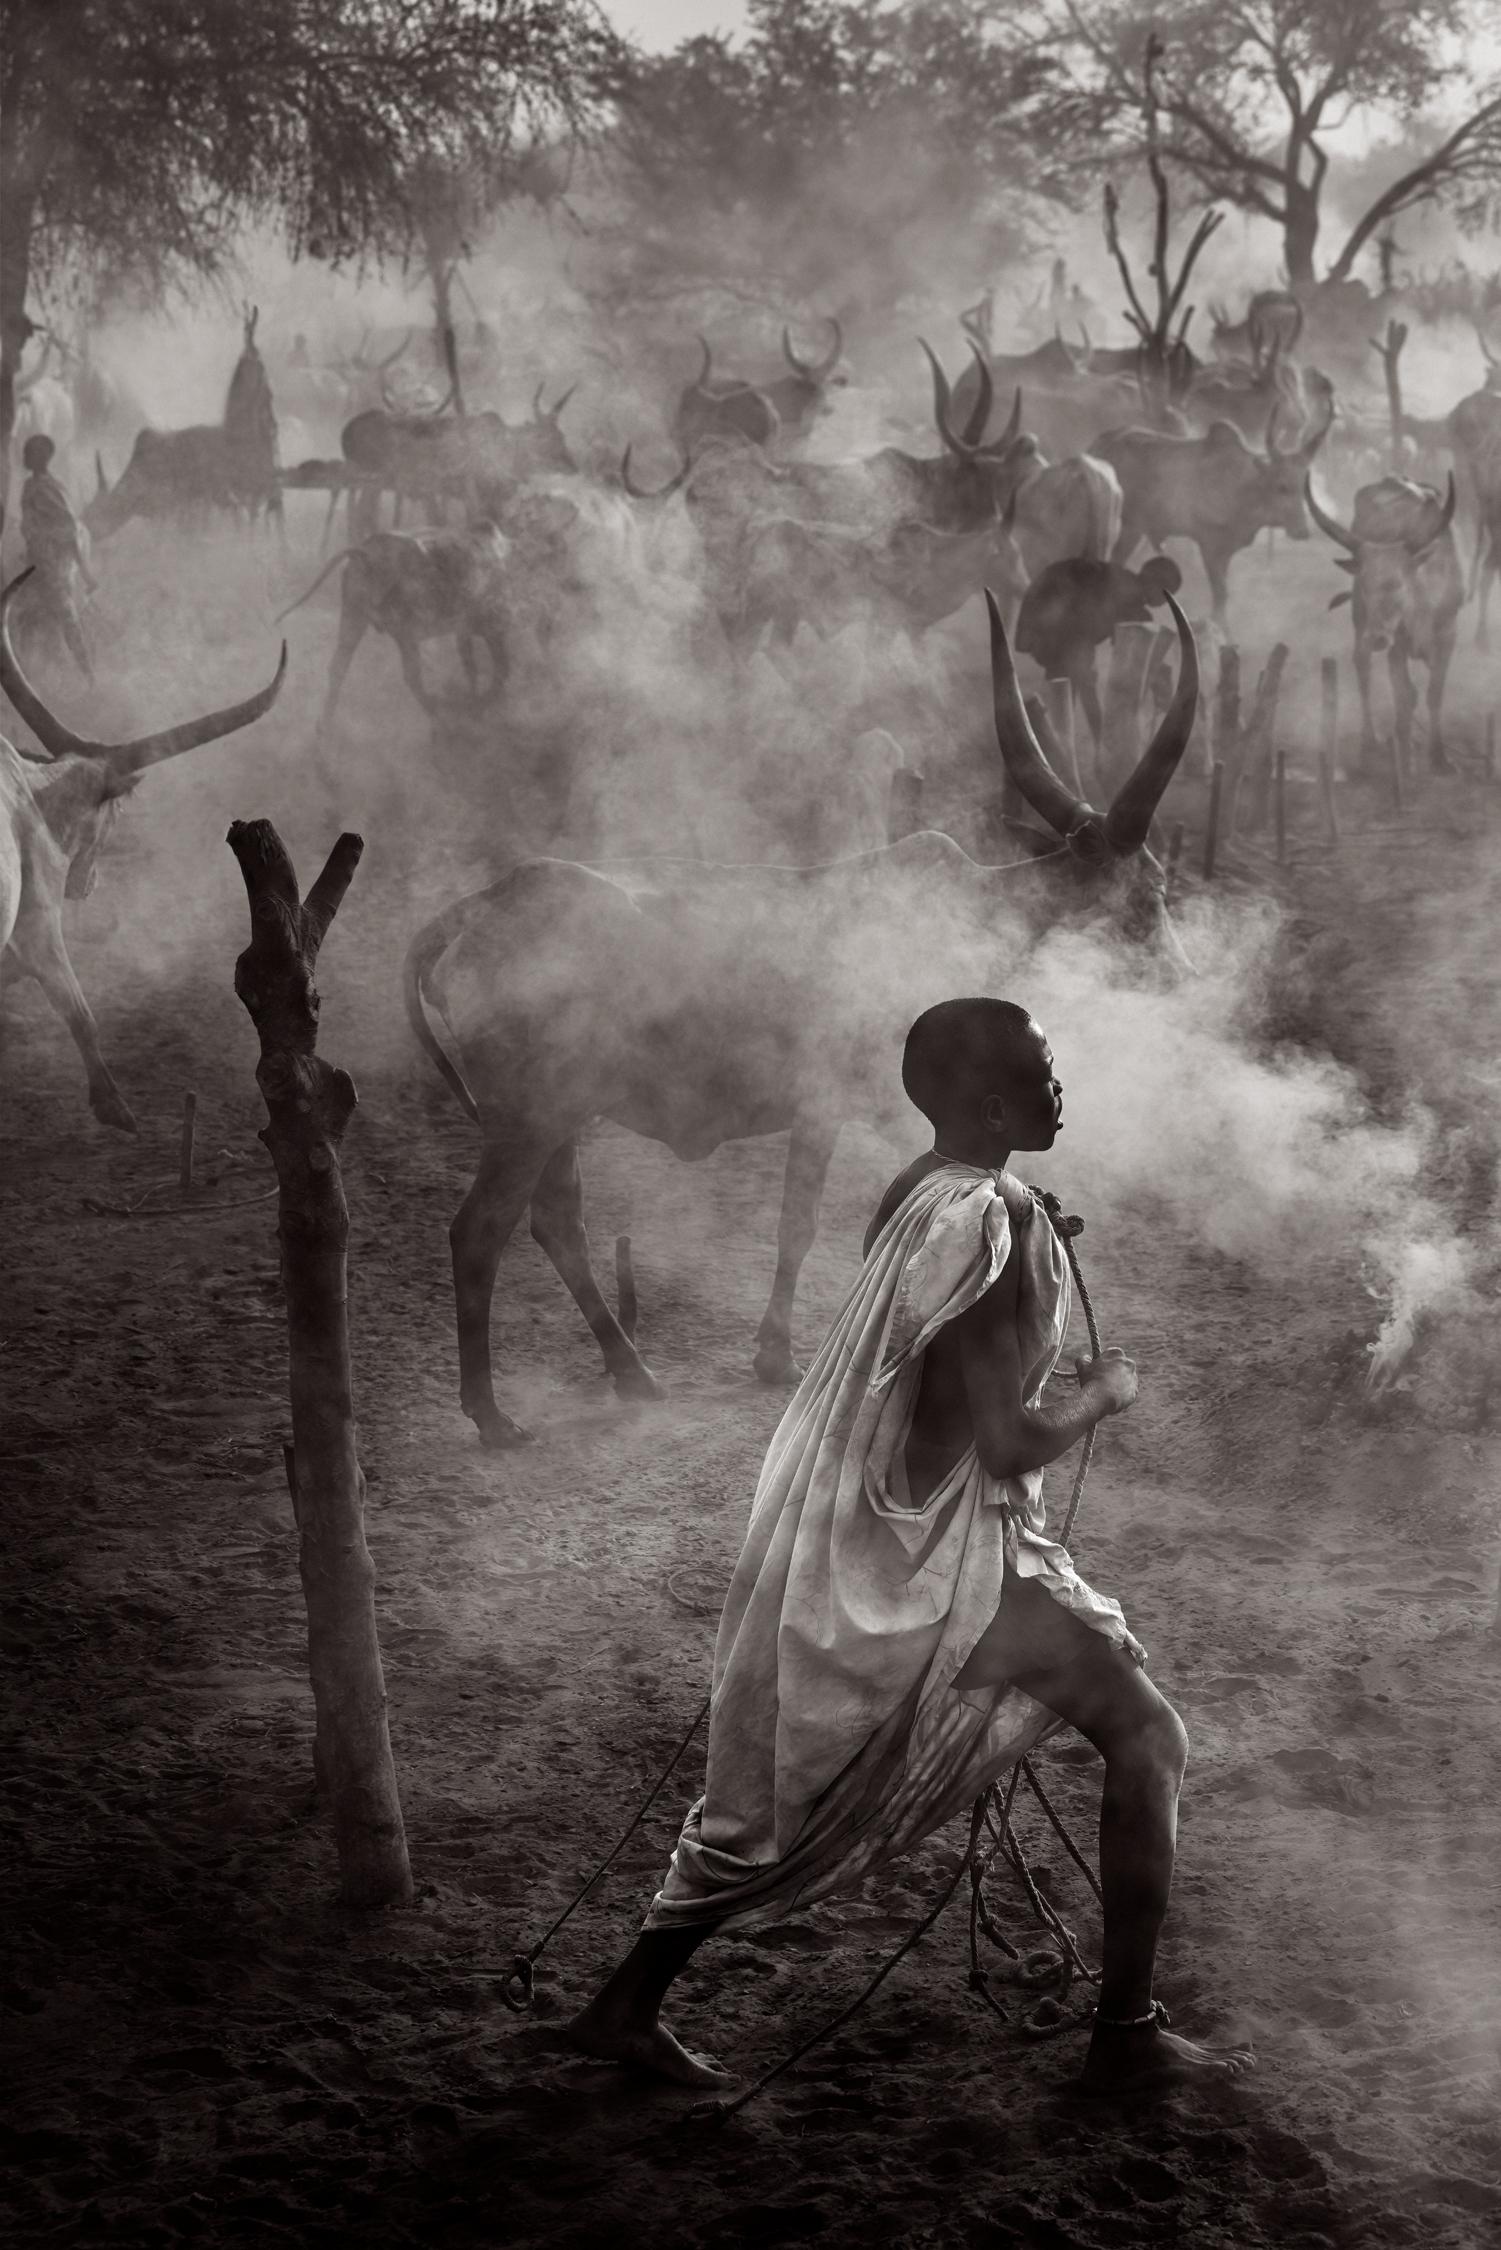 Drew Doggett Black and White Photograph – Der junge Junge geht durch die Rinderlager in der Dämmerung, Schwarz-Weiß, Surreal